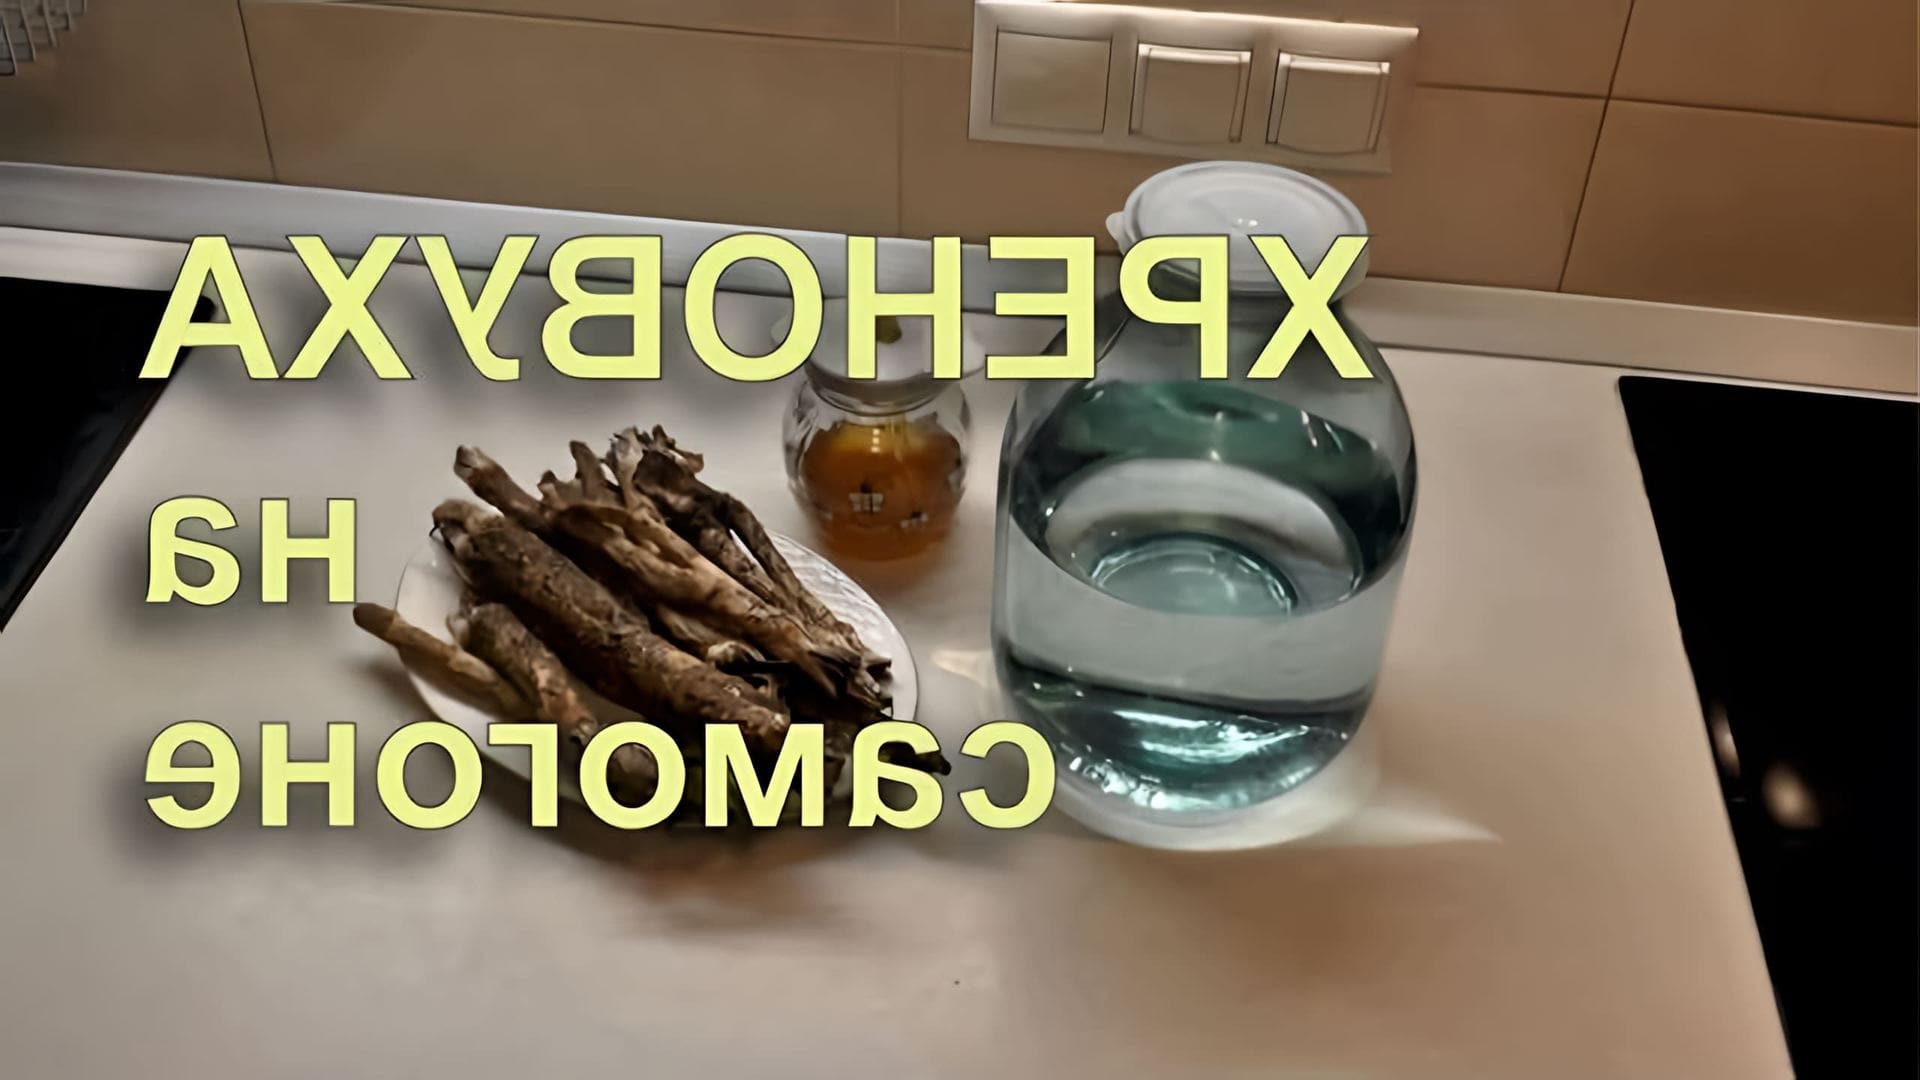 В этом видео демонстрируется процесс приготовления хреновухи - традиционного русского напитка